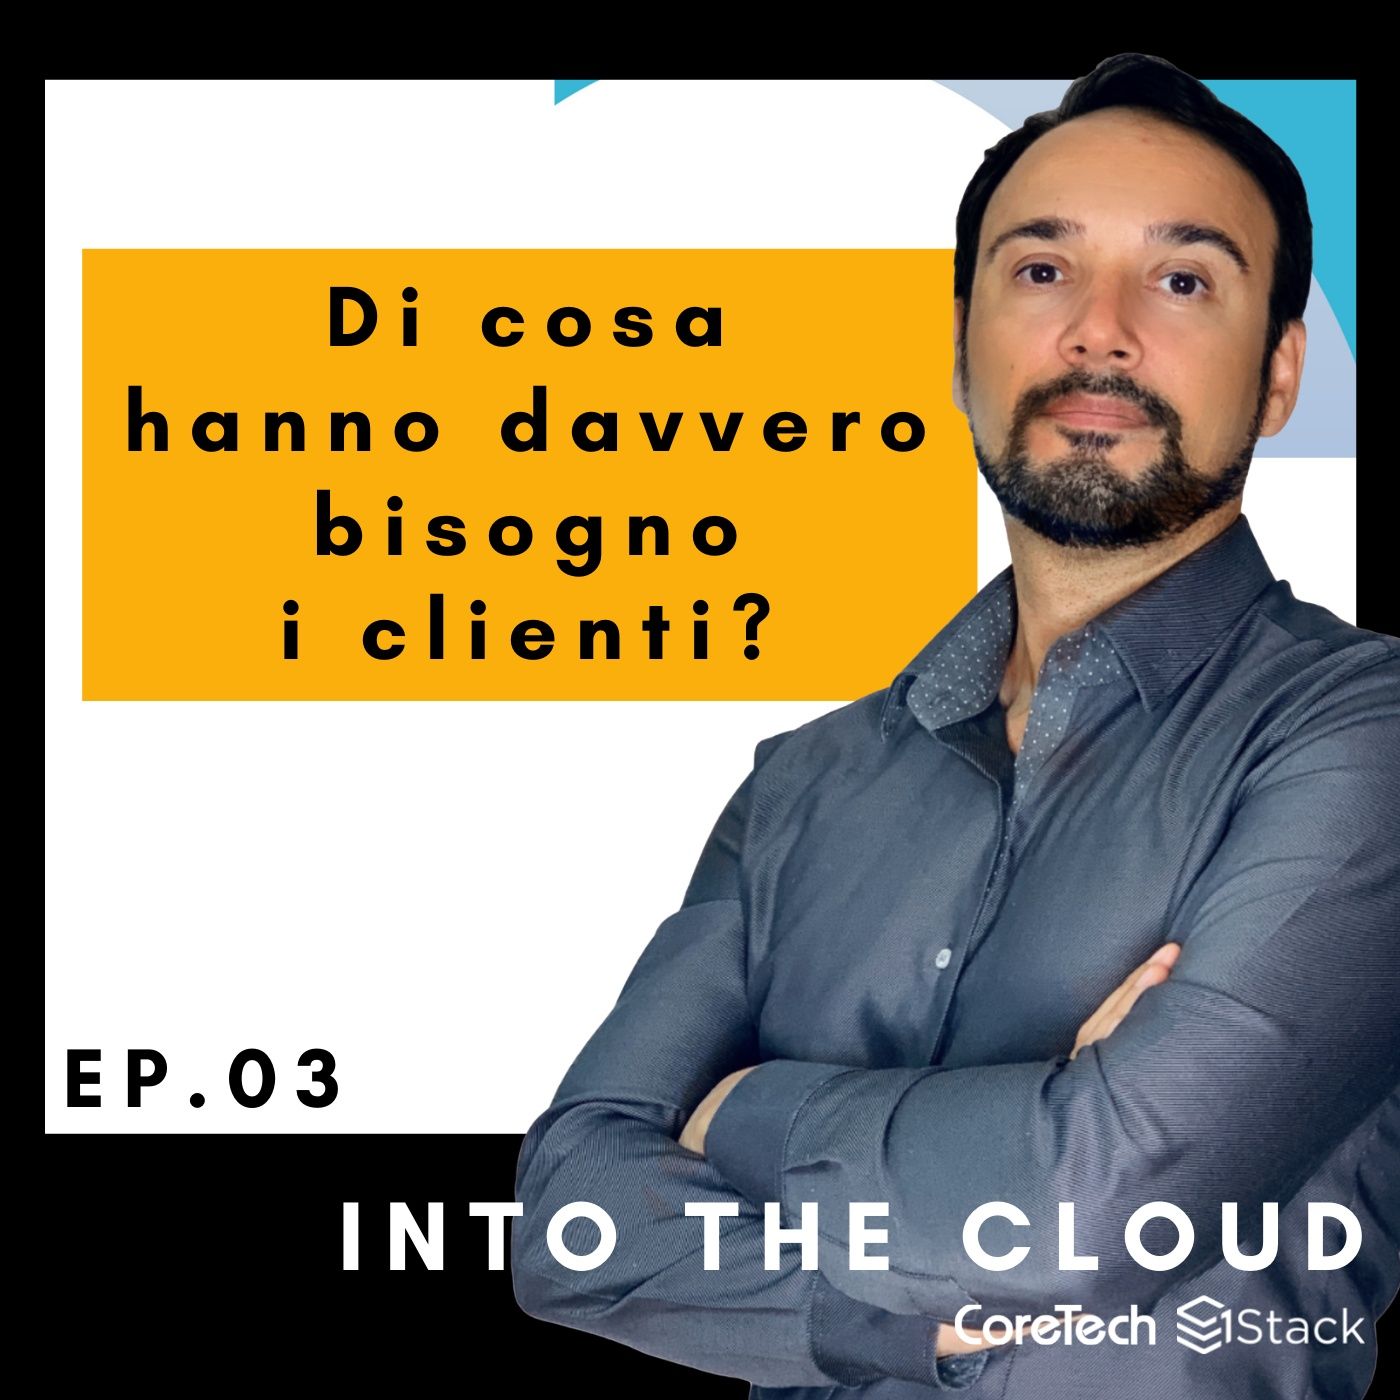 Cloud: di cosa hanno davvero bisogno i clienti?